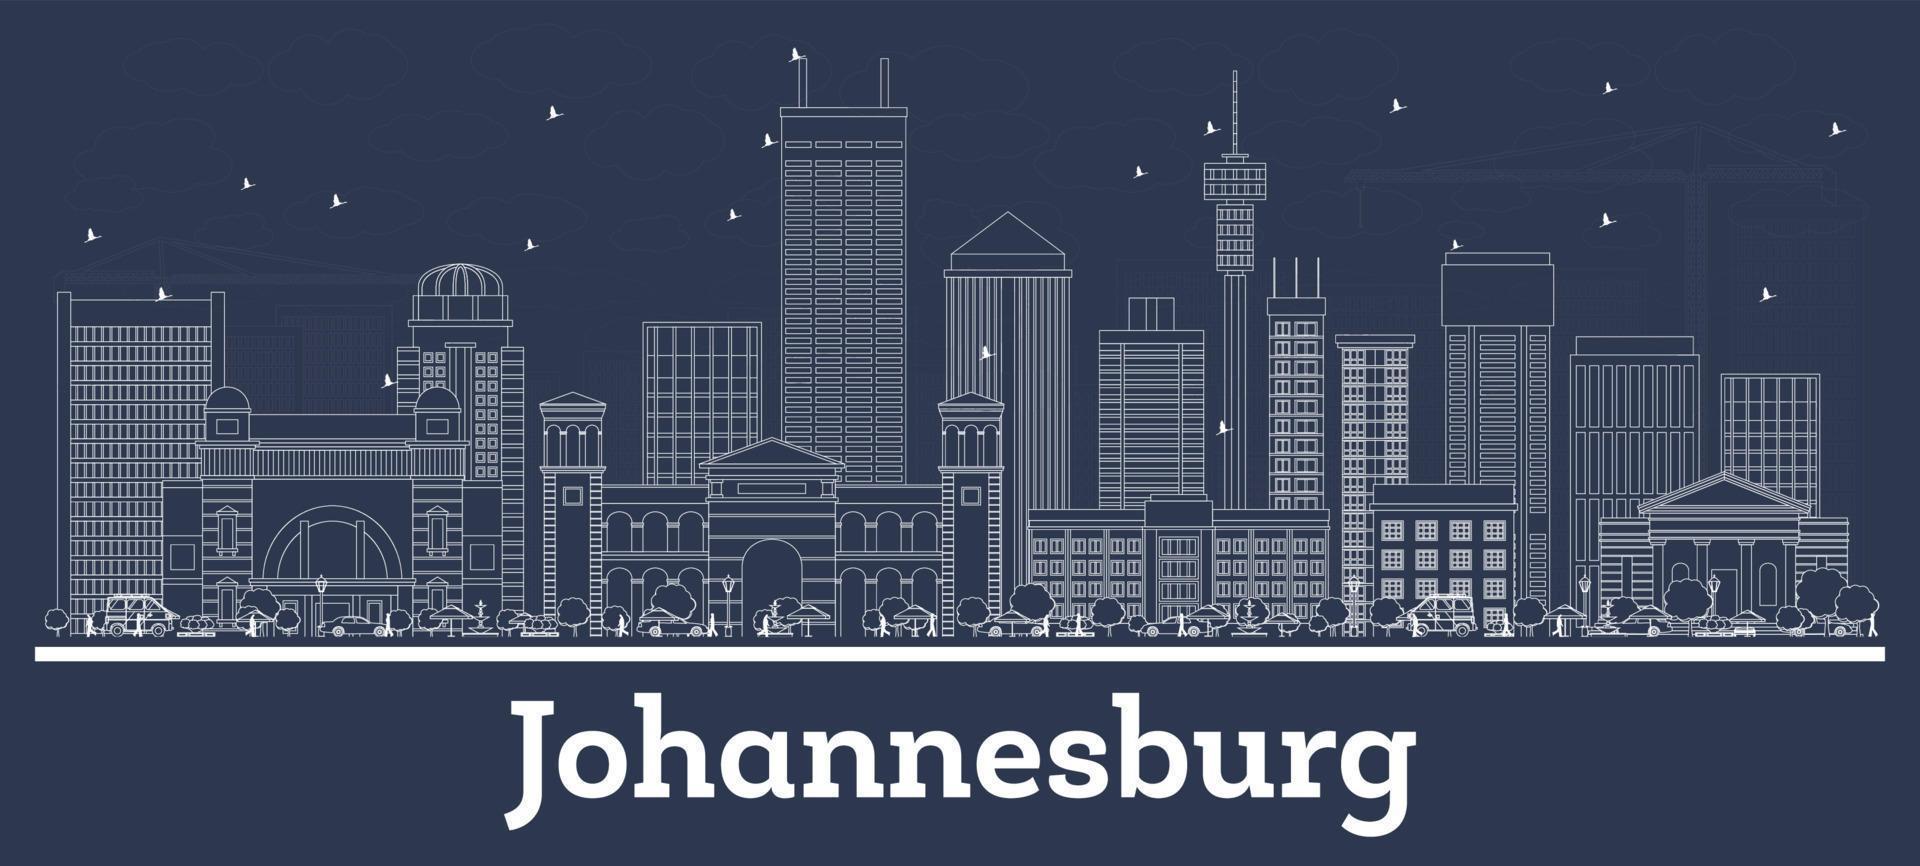 delinear el horizonte de la ciudad de johannesburgo, sudáfrica, con edificios blancos. vector